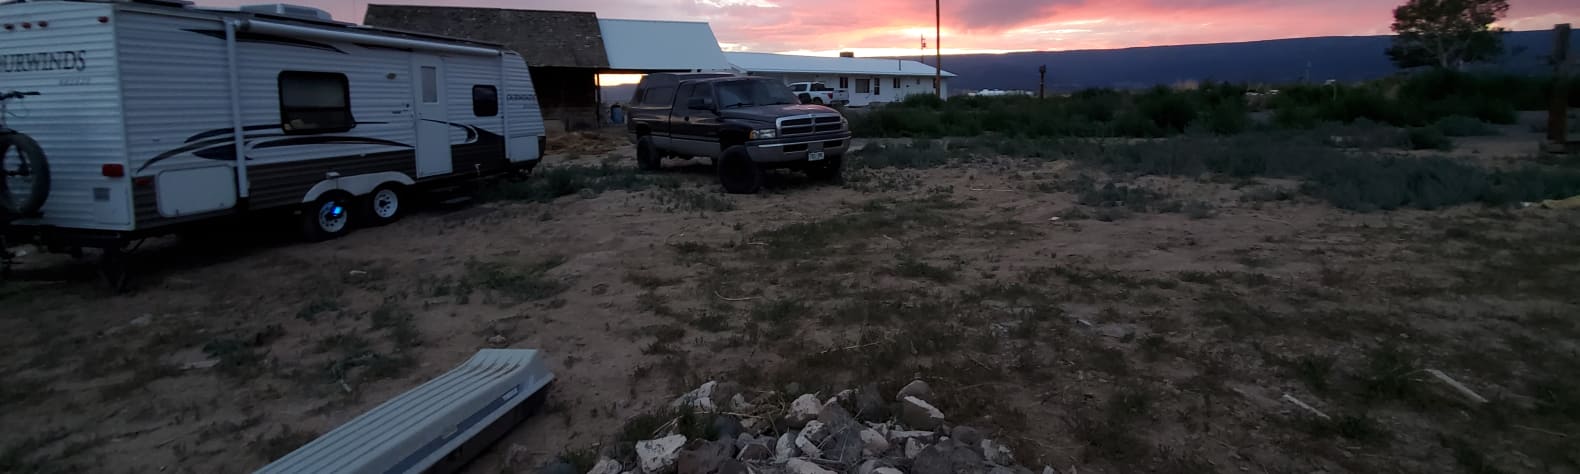 Stunning sunset on the Mesa